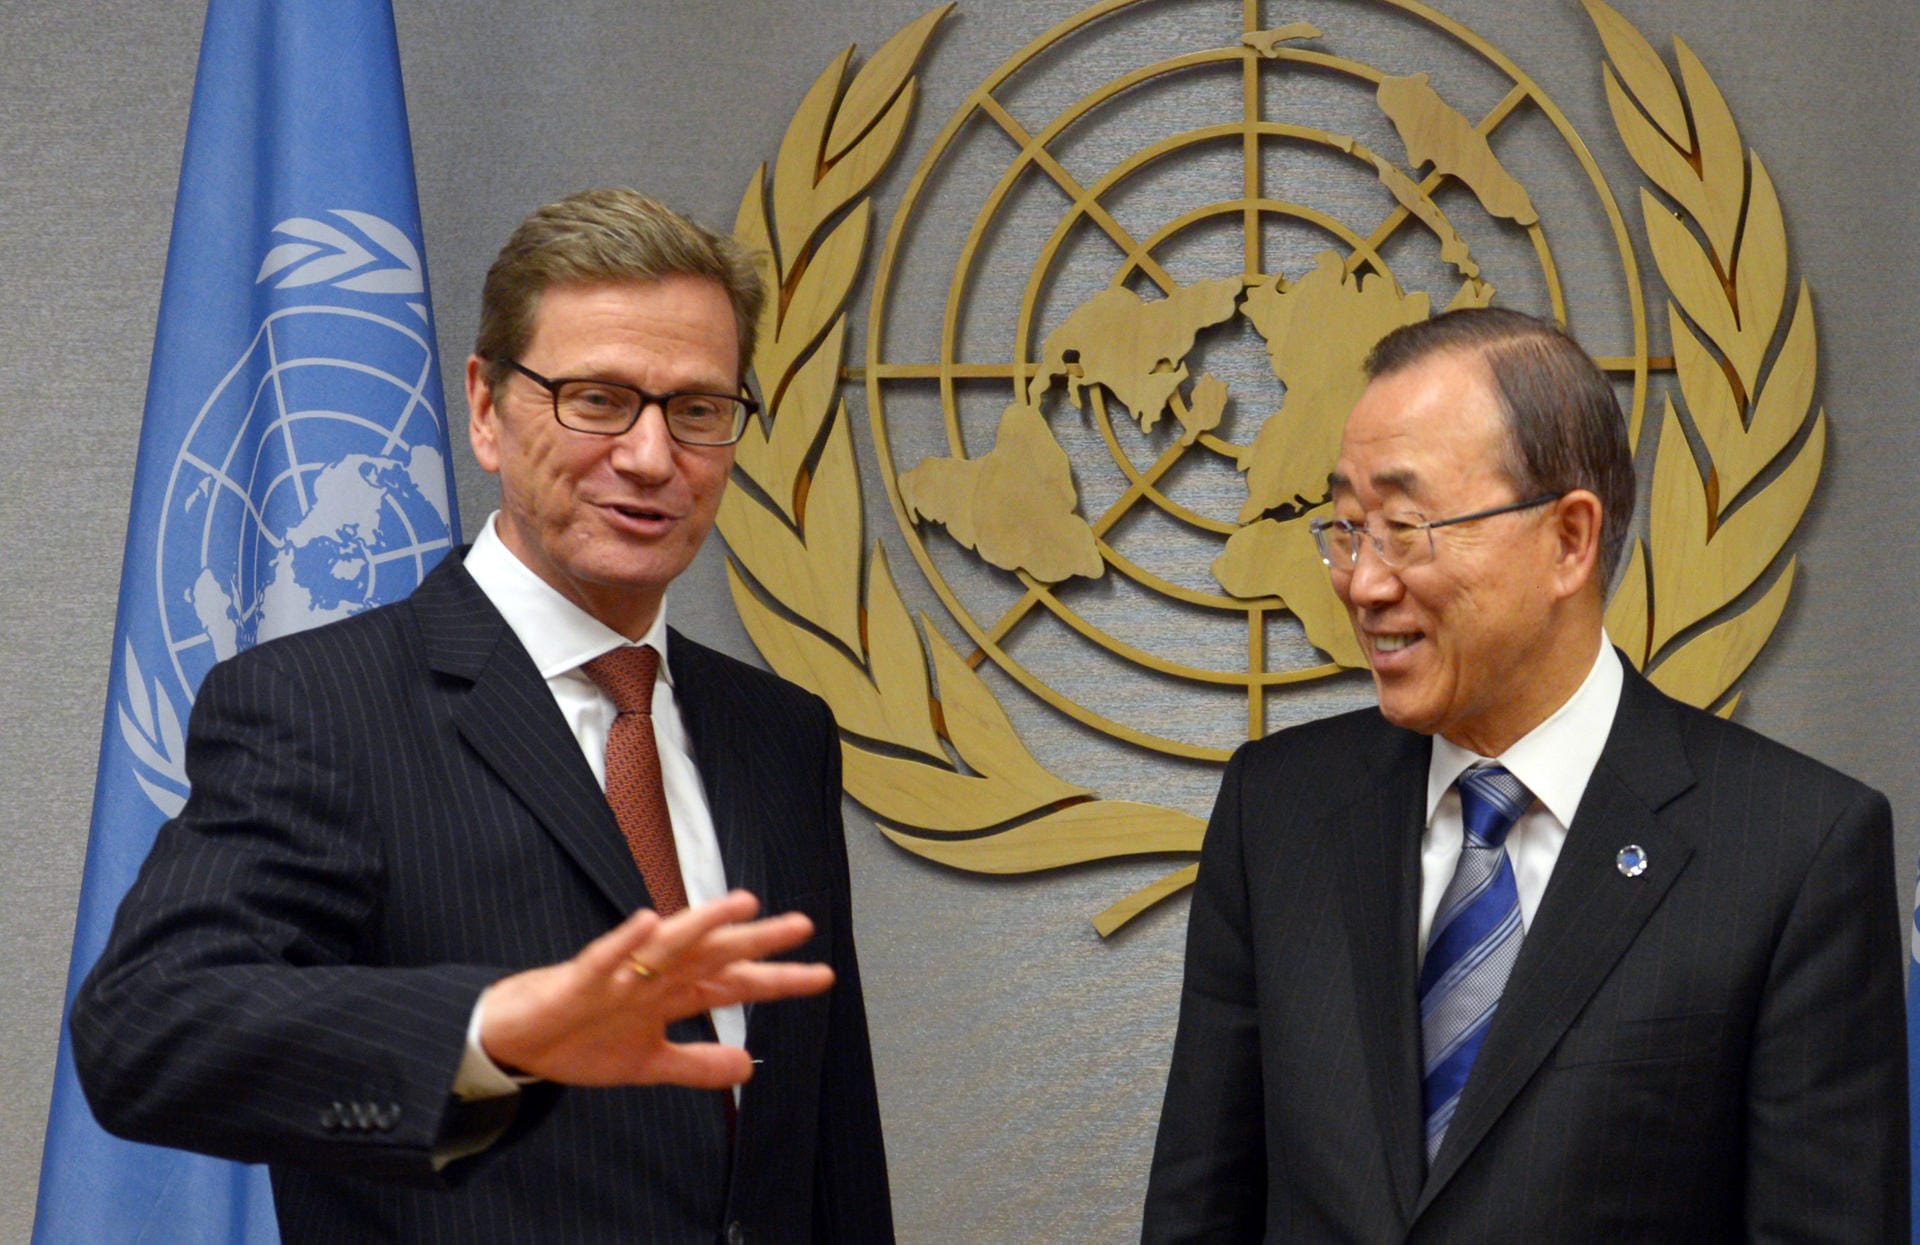 Und als Außenminister ist man immer unterwegs. Hier ist Westerwelle zusammen mit dem Generalsekretär der Vereinten Nationen, Ban Ki Moon, zu sehen.